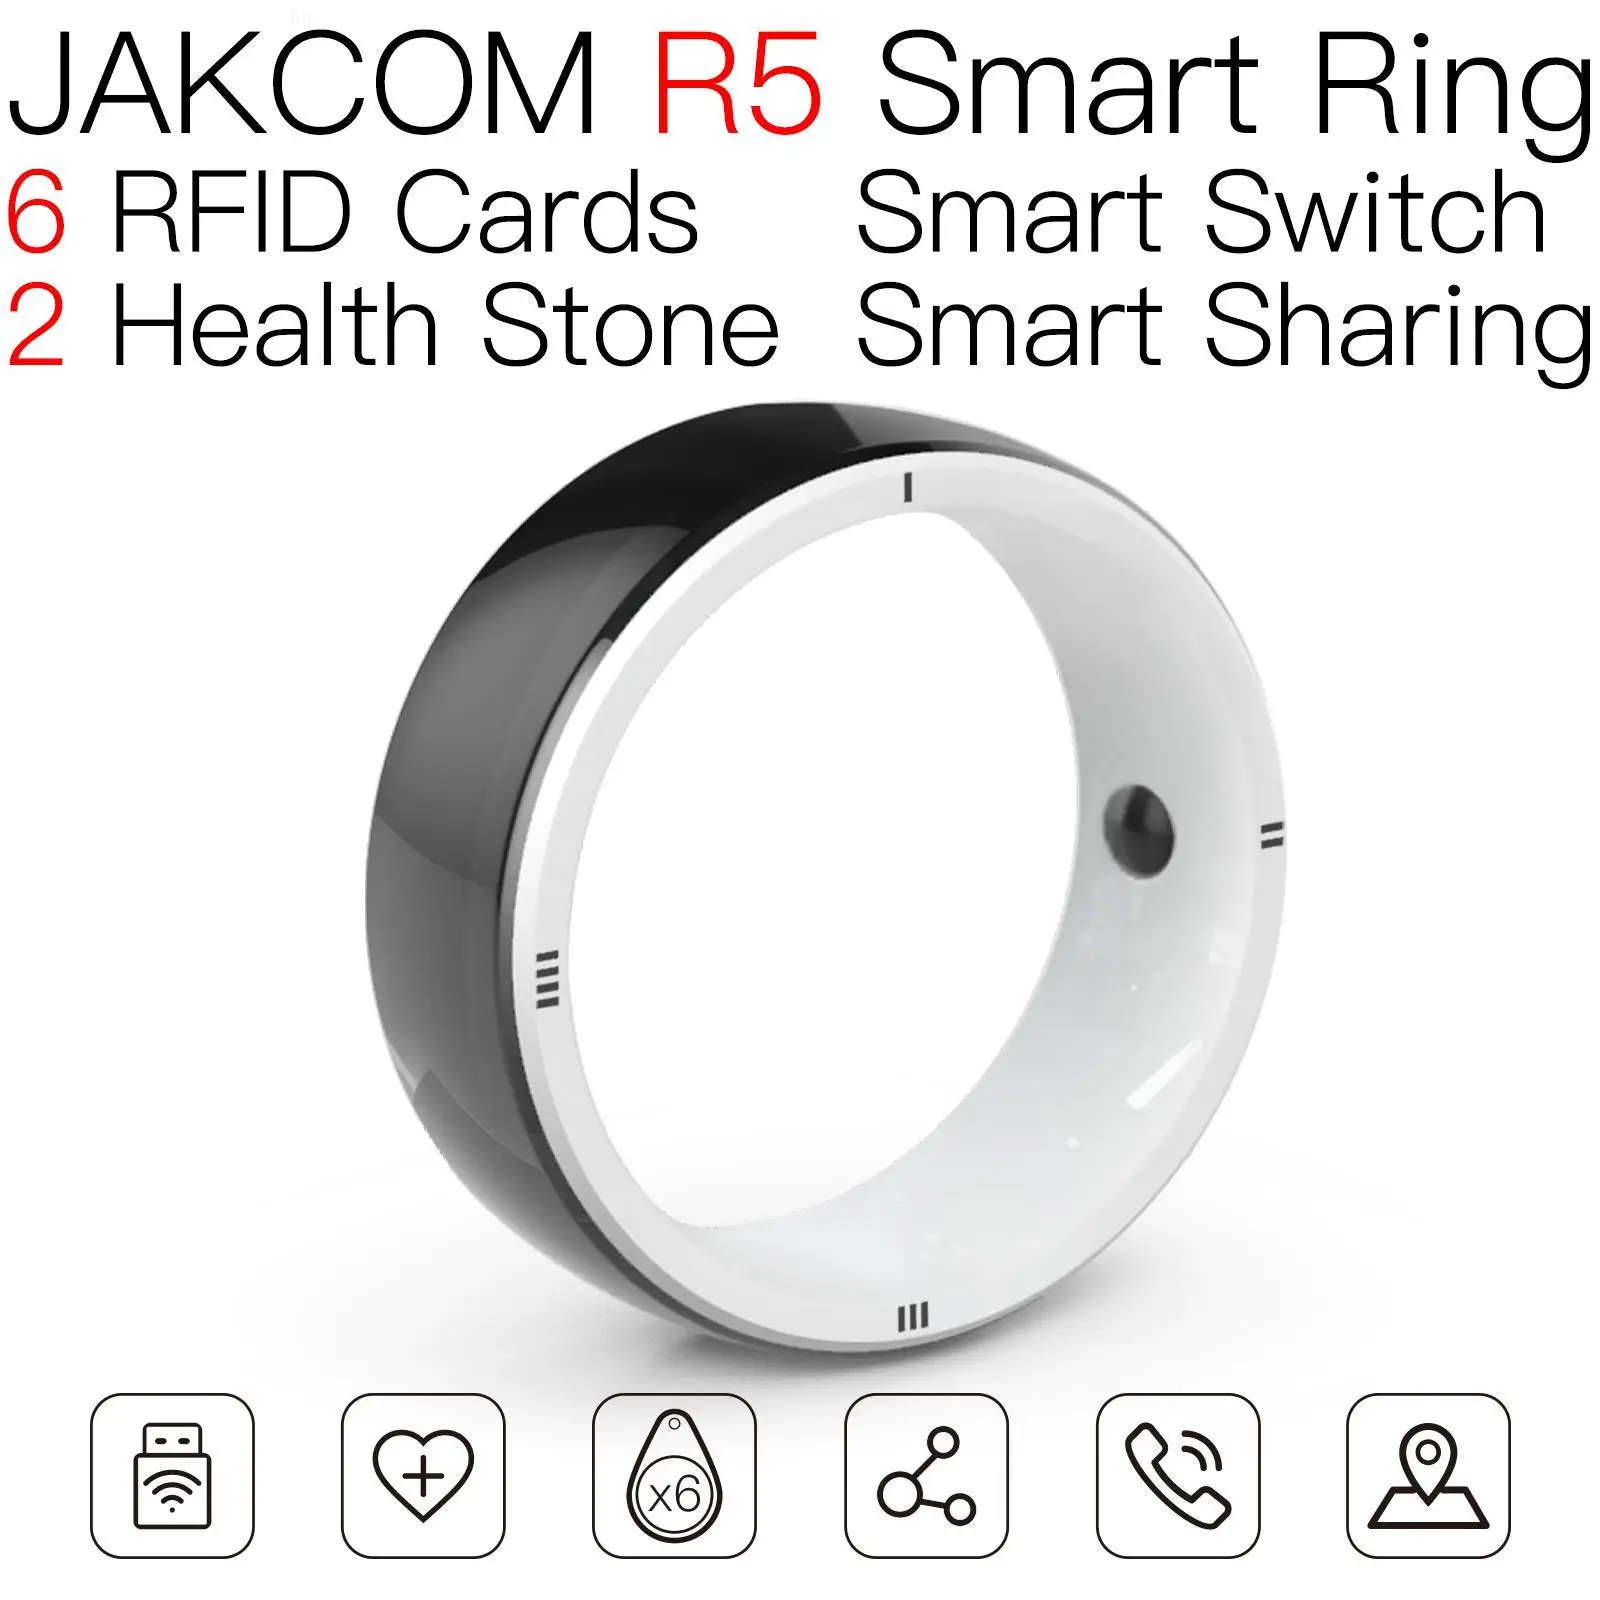 

Смарт-кольцо JAKCOM R5 для мужчин и женщин rfid uhf ворота китайская карта магический чип-подавитель дешевые пакеты amibo сканирование микрочип драко...